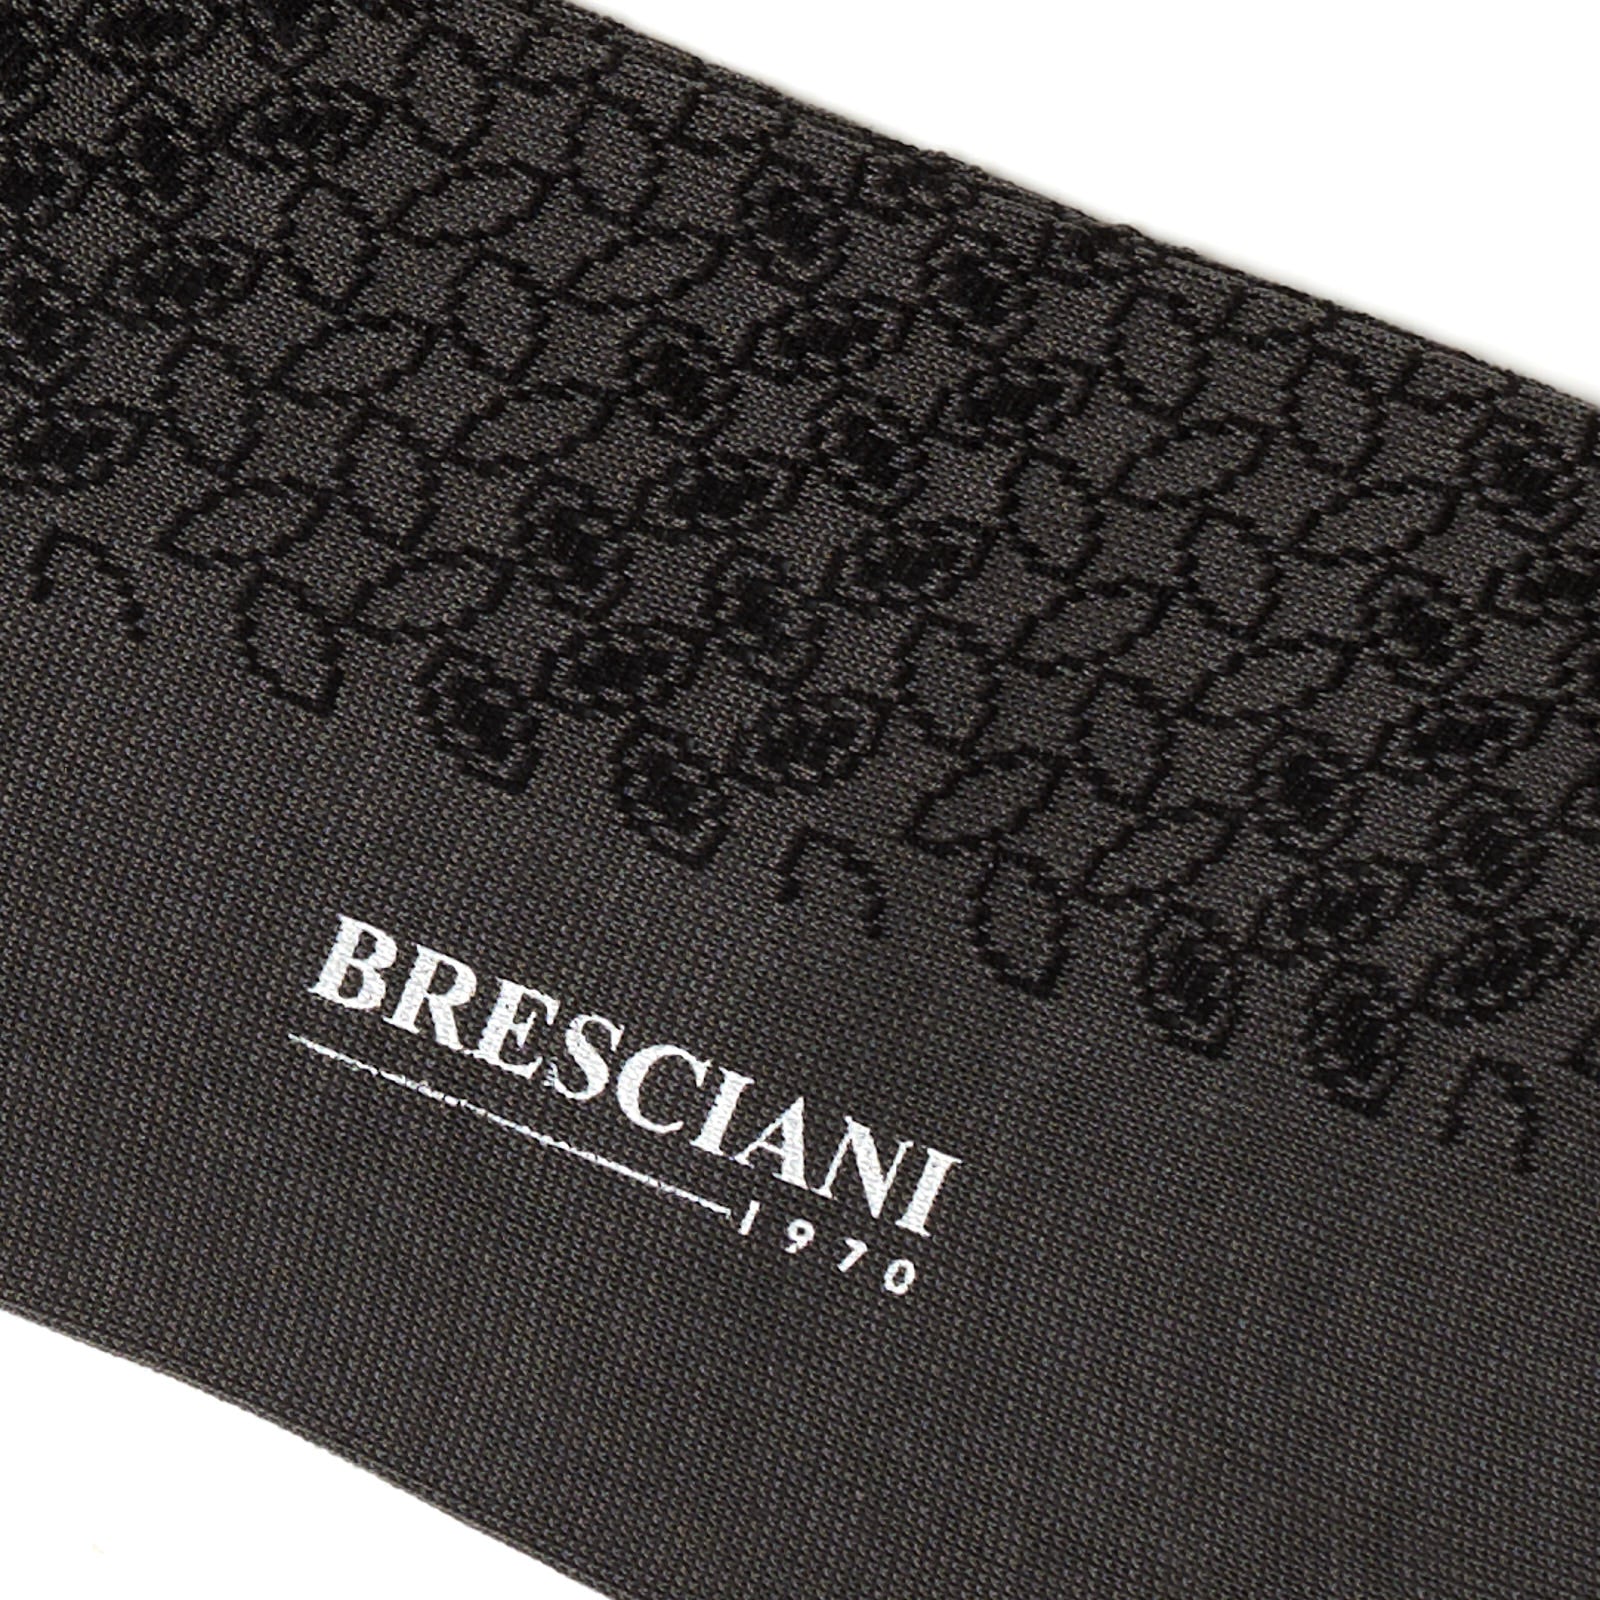 BRESCIANI Cotton Small Pattern Design Mid Calf Length Socks US M-L BRESCIANI